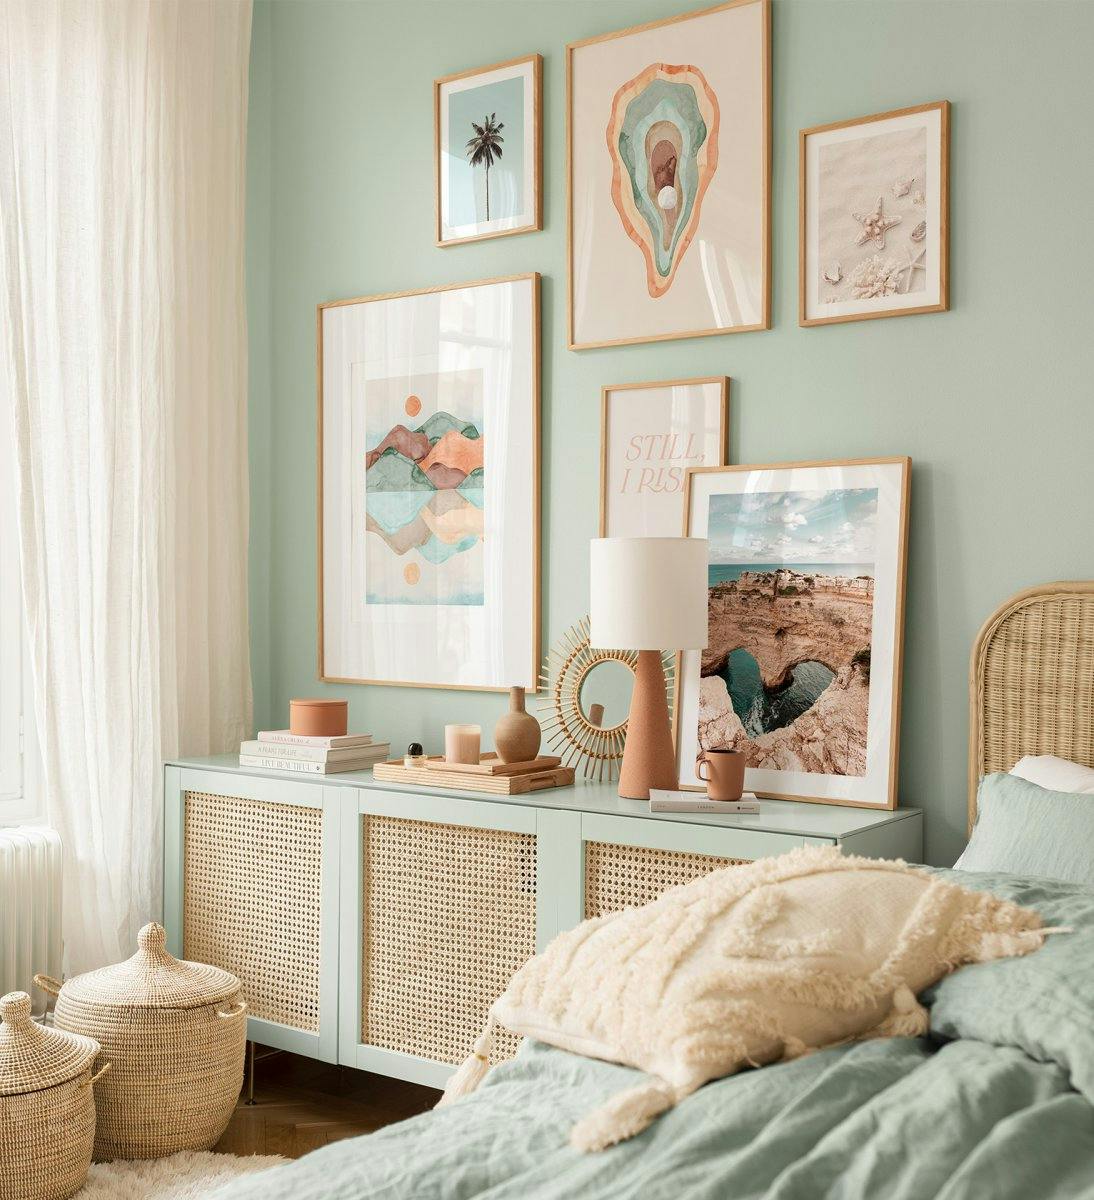 Barevné umělecké plakáty a fotografie v různých přírodních odstínech do ložnice nebo obývacího pokoje